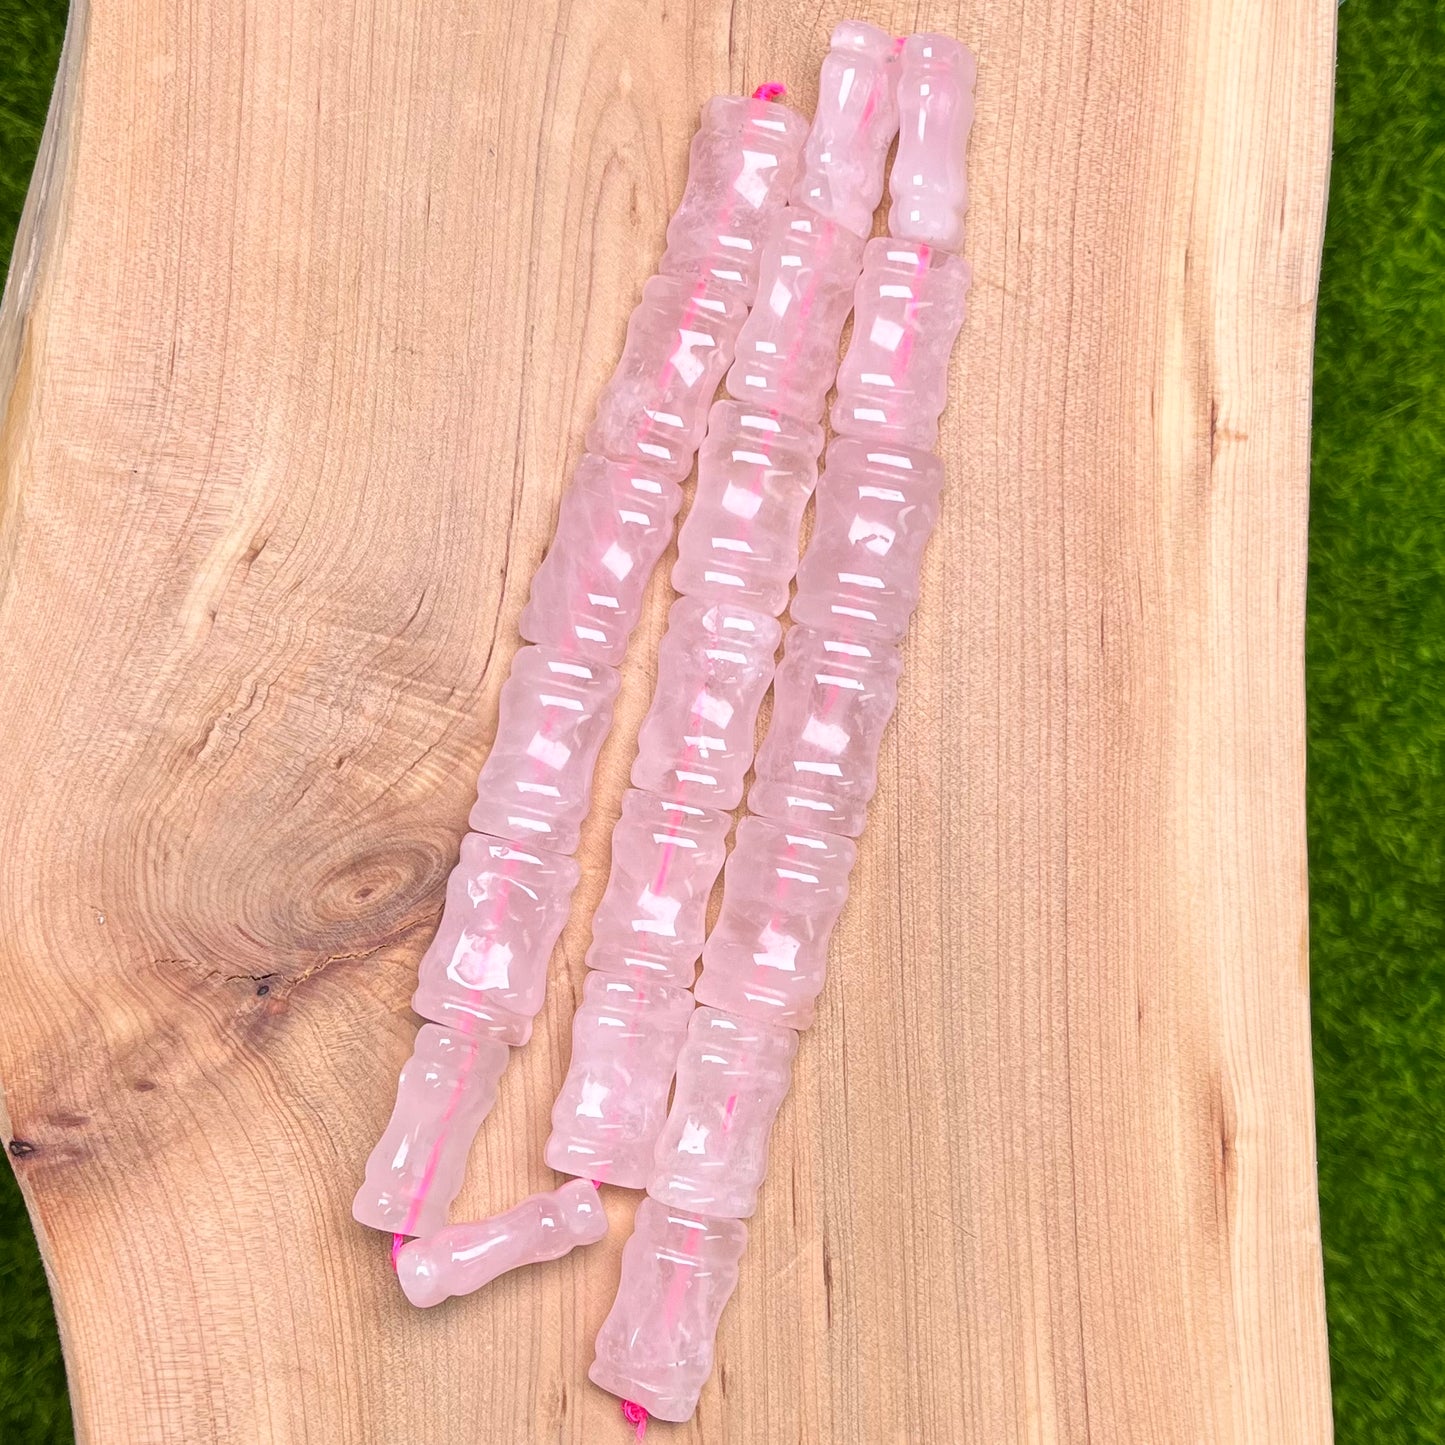 Rose Quartz bamboo joint strand 11*18mm